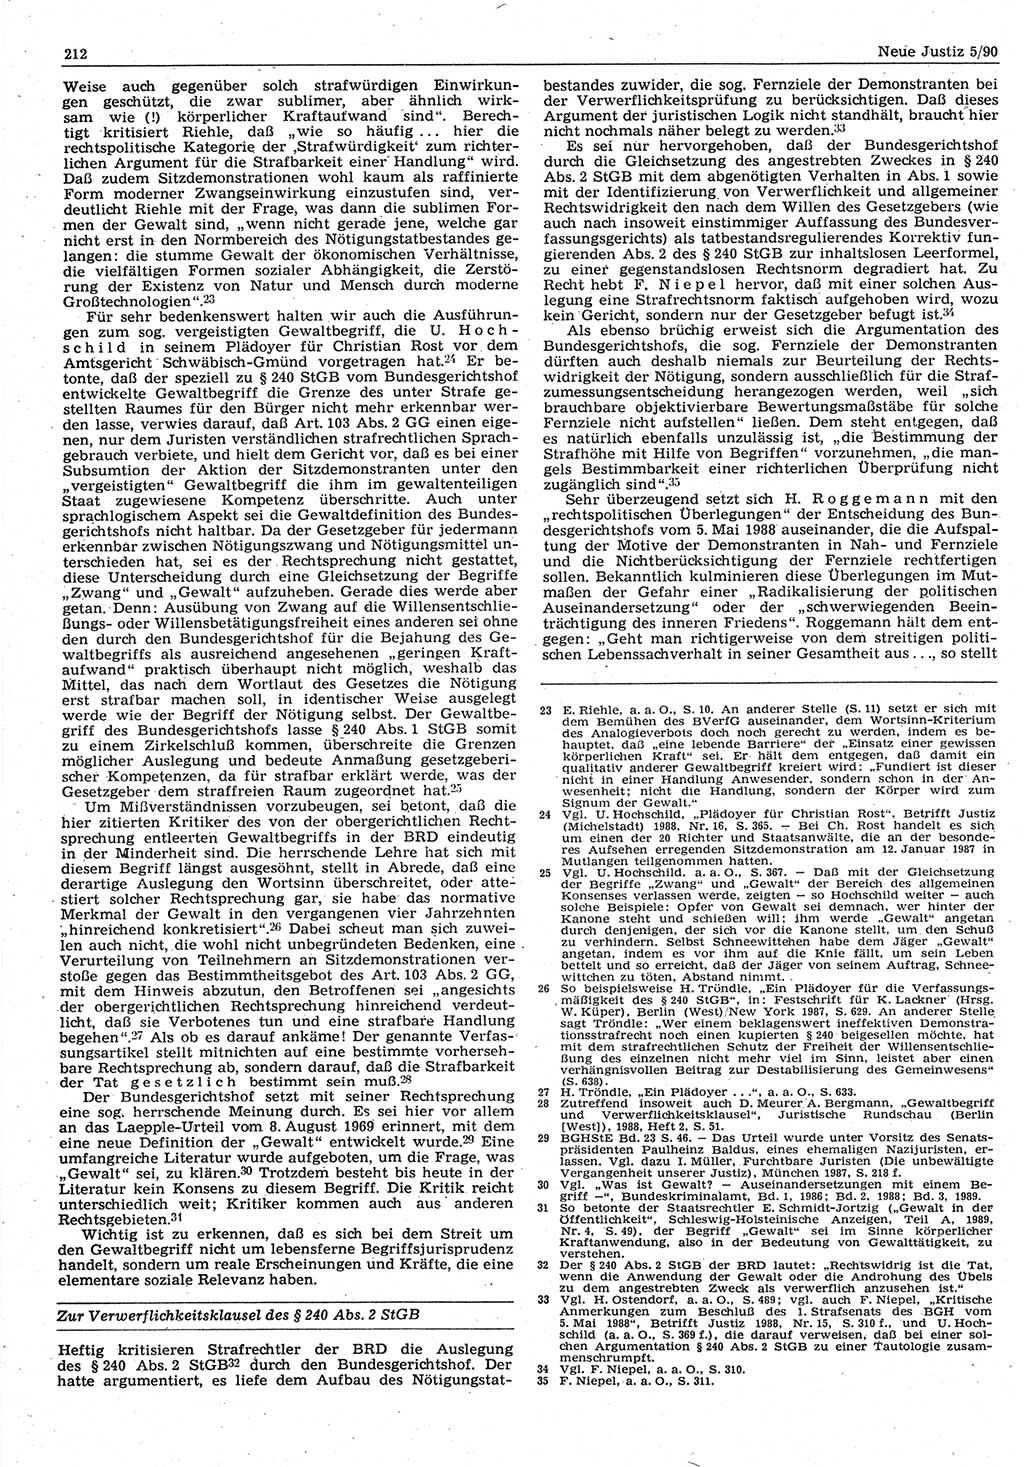 Neue Justiz (NJ), Zeitschrift für Rechtsetzung und Rechtsanwendung [Deutsche Demokratische Republik (DDR)], 44. Jahrgang 1990, Seite 212 (NJ DDR 1990, S. 212)